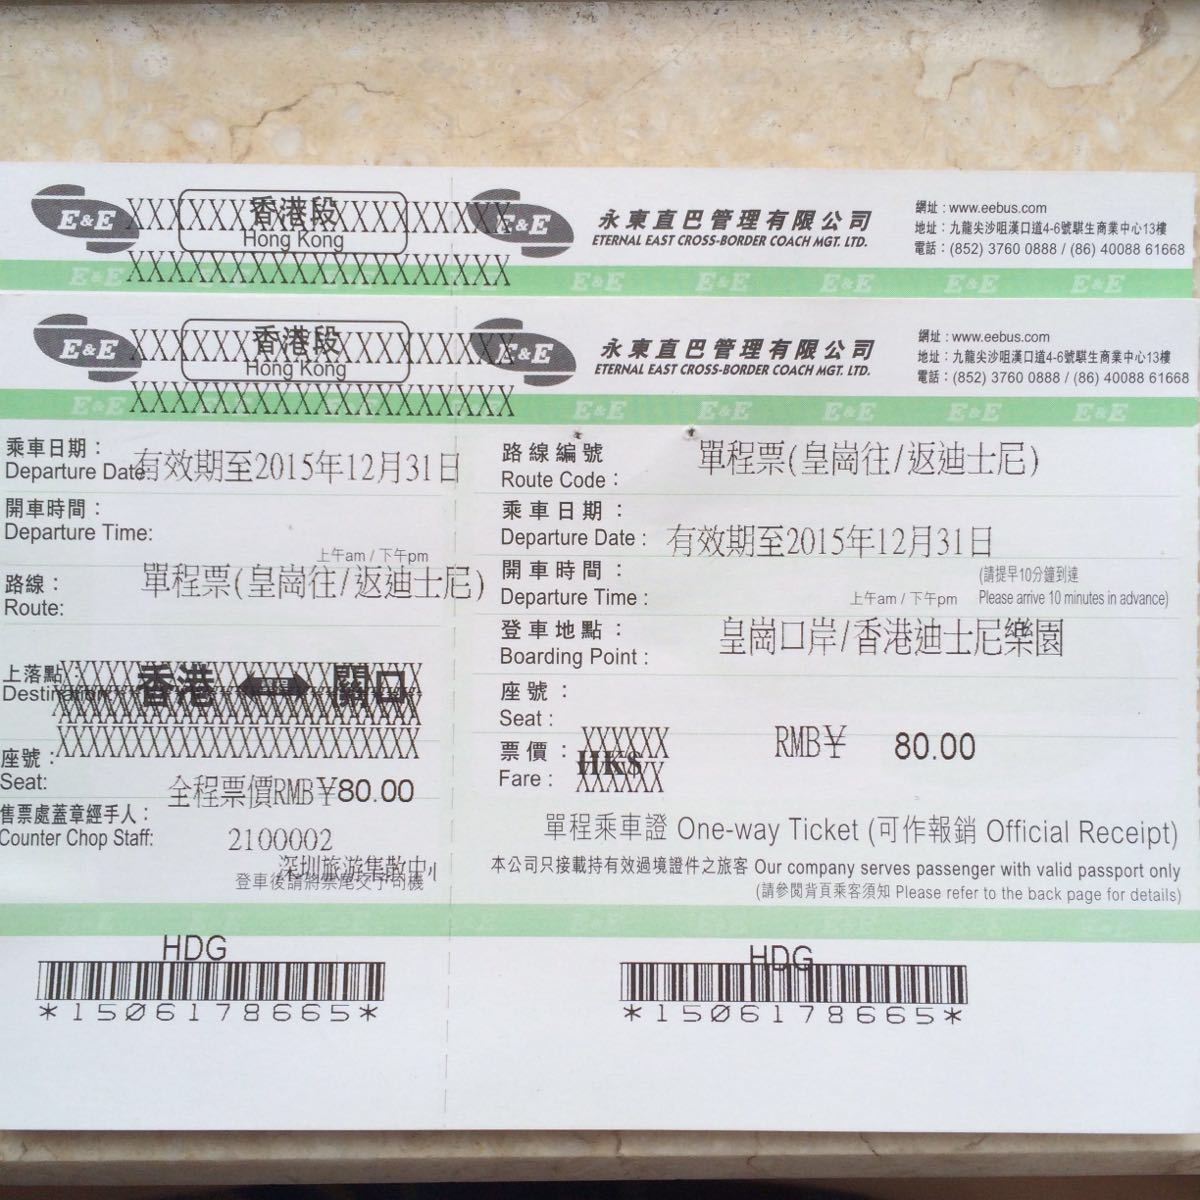 洛阳-----郑州518次代用车票-价格:5元-se84987958-火车票-零售-7788收藏__收藏热线